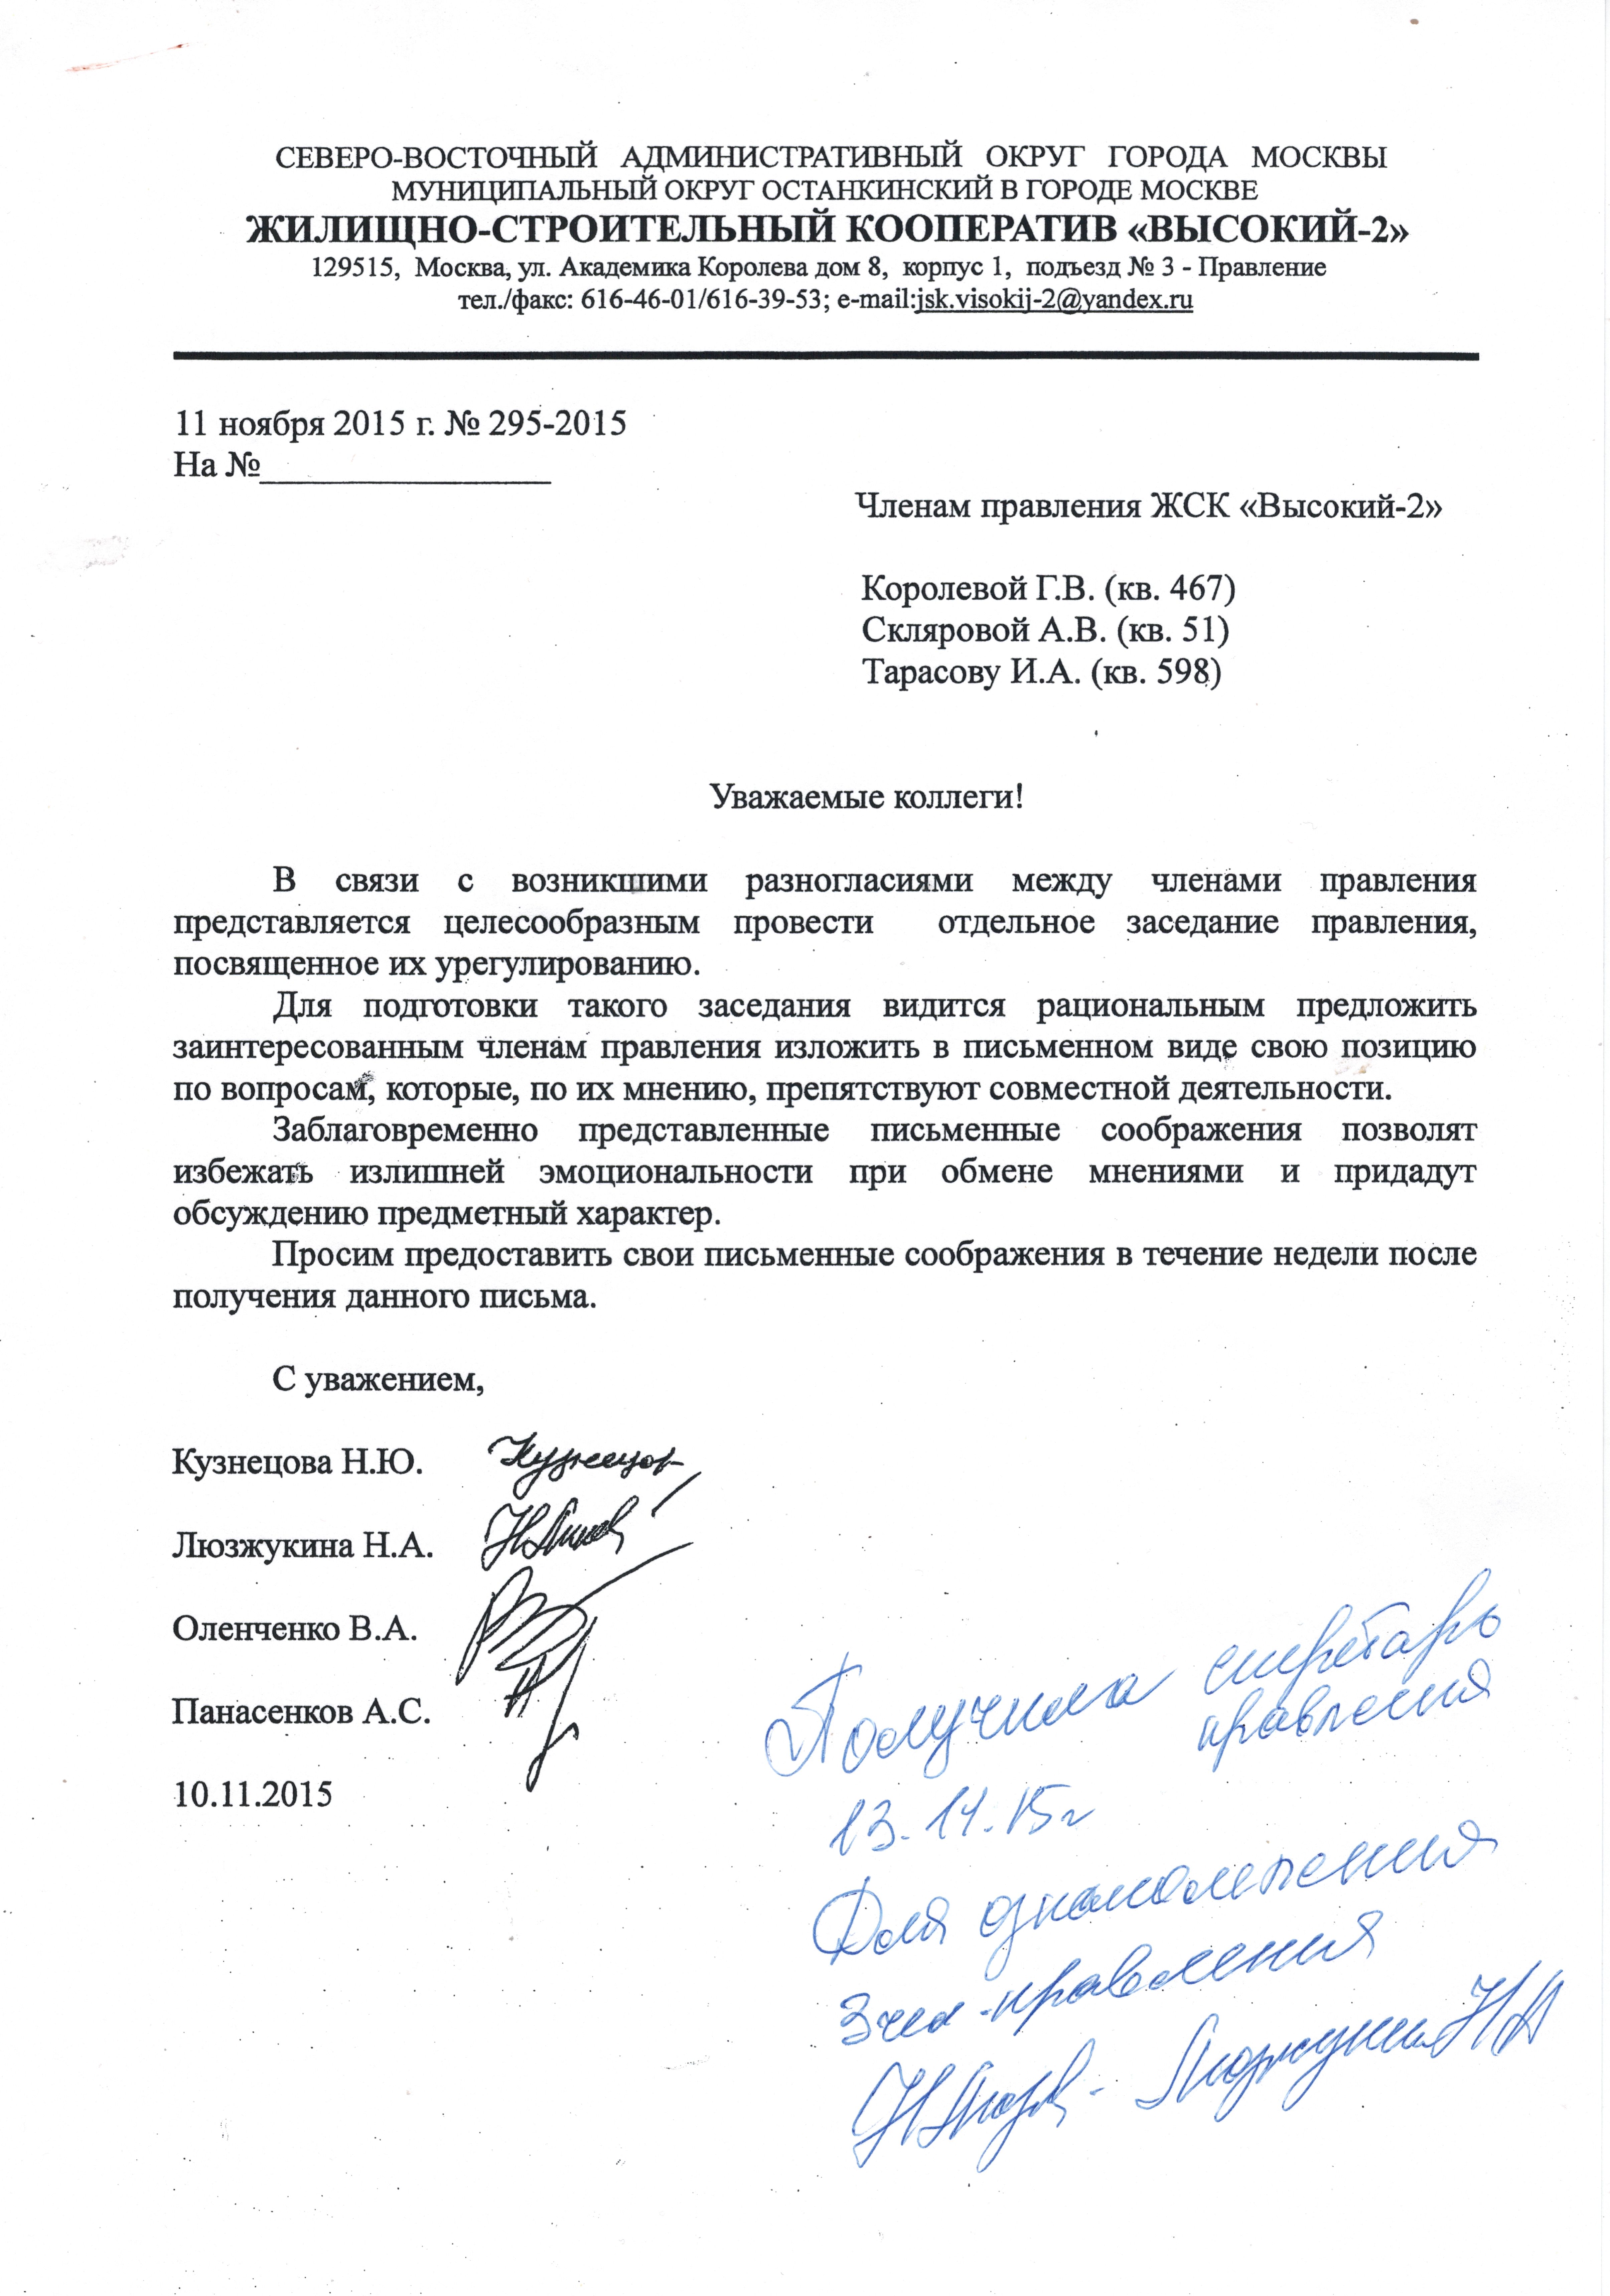 Письмо председателя Кузнецовой Н.Ю. членам правления от 11 ноября 2015.jpg